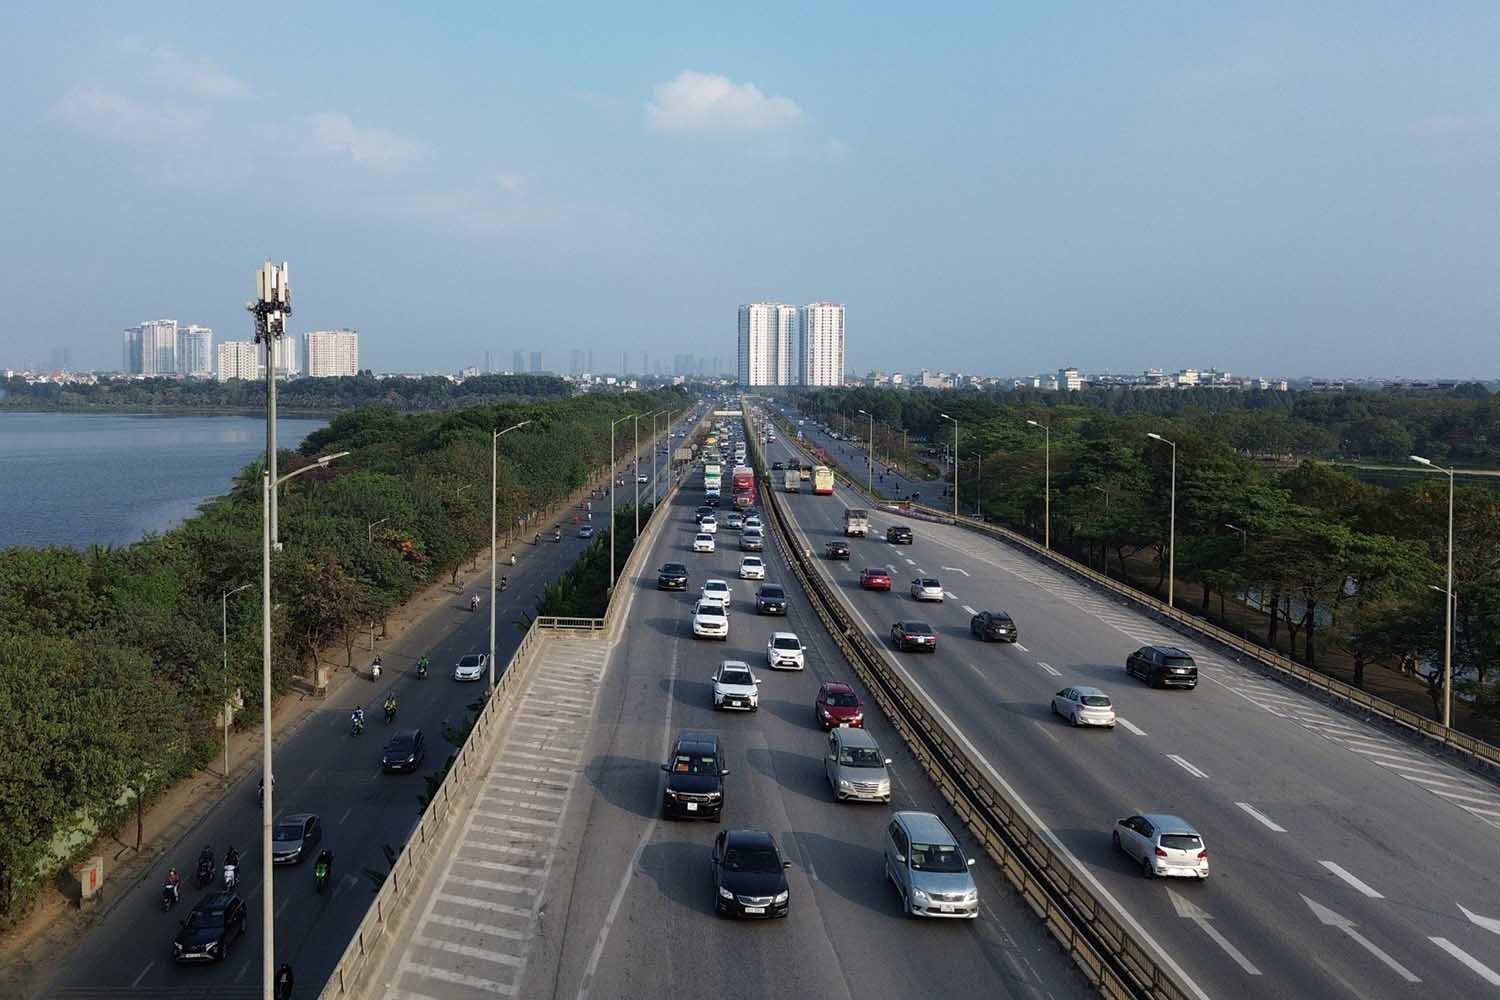 Dự kiến từ chiều đến tối, lượng phương tiện đổ về Hà Nội sẽ đông hơn. Do đó, người dân nên theo dõi tình hình giao thông trên tuyến để có lộ trình phù hợp, tránh tình trạng bị ùn tắc.